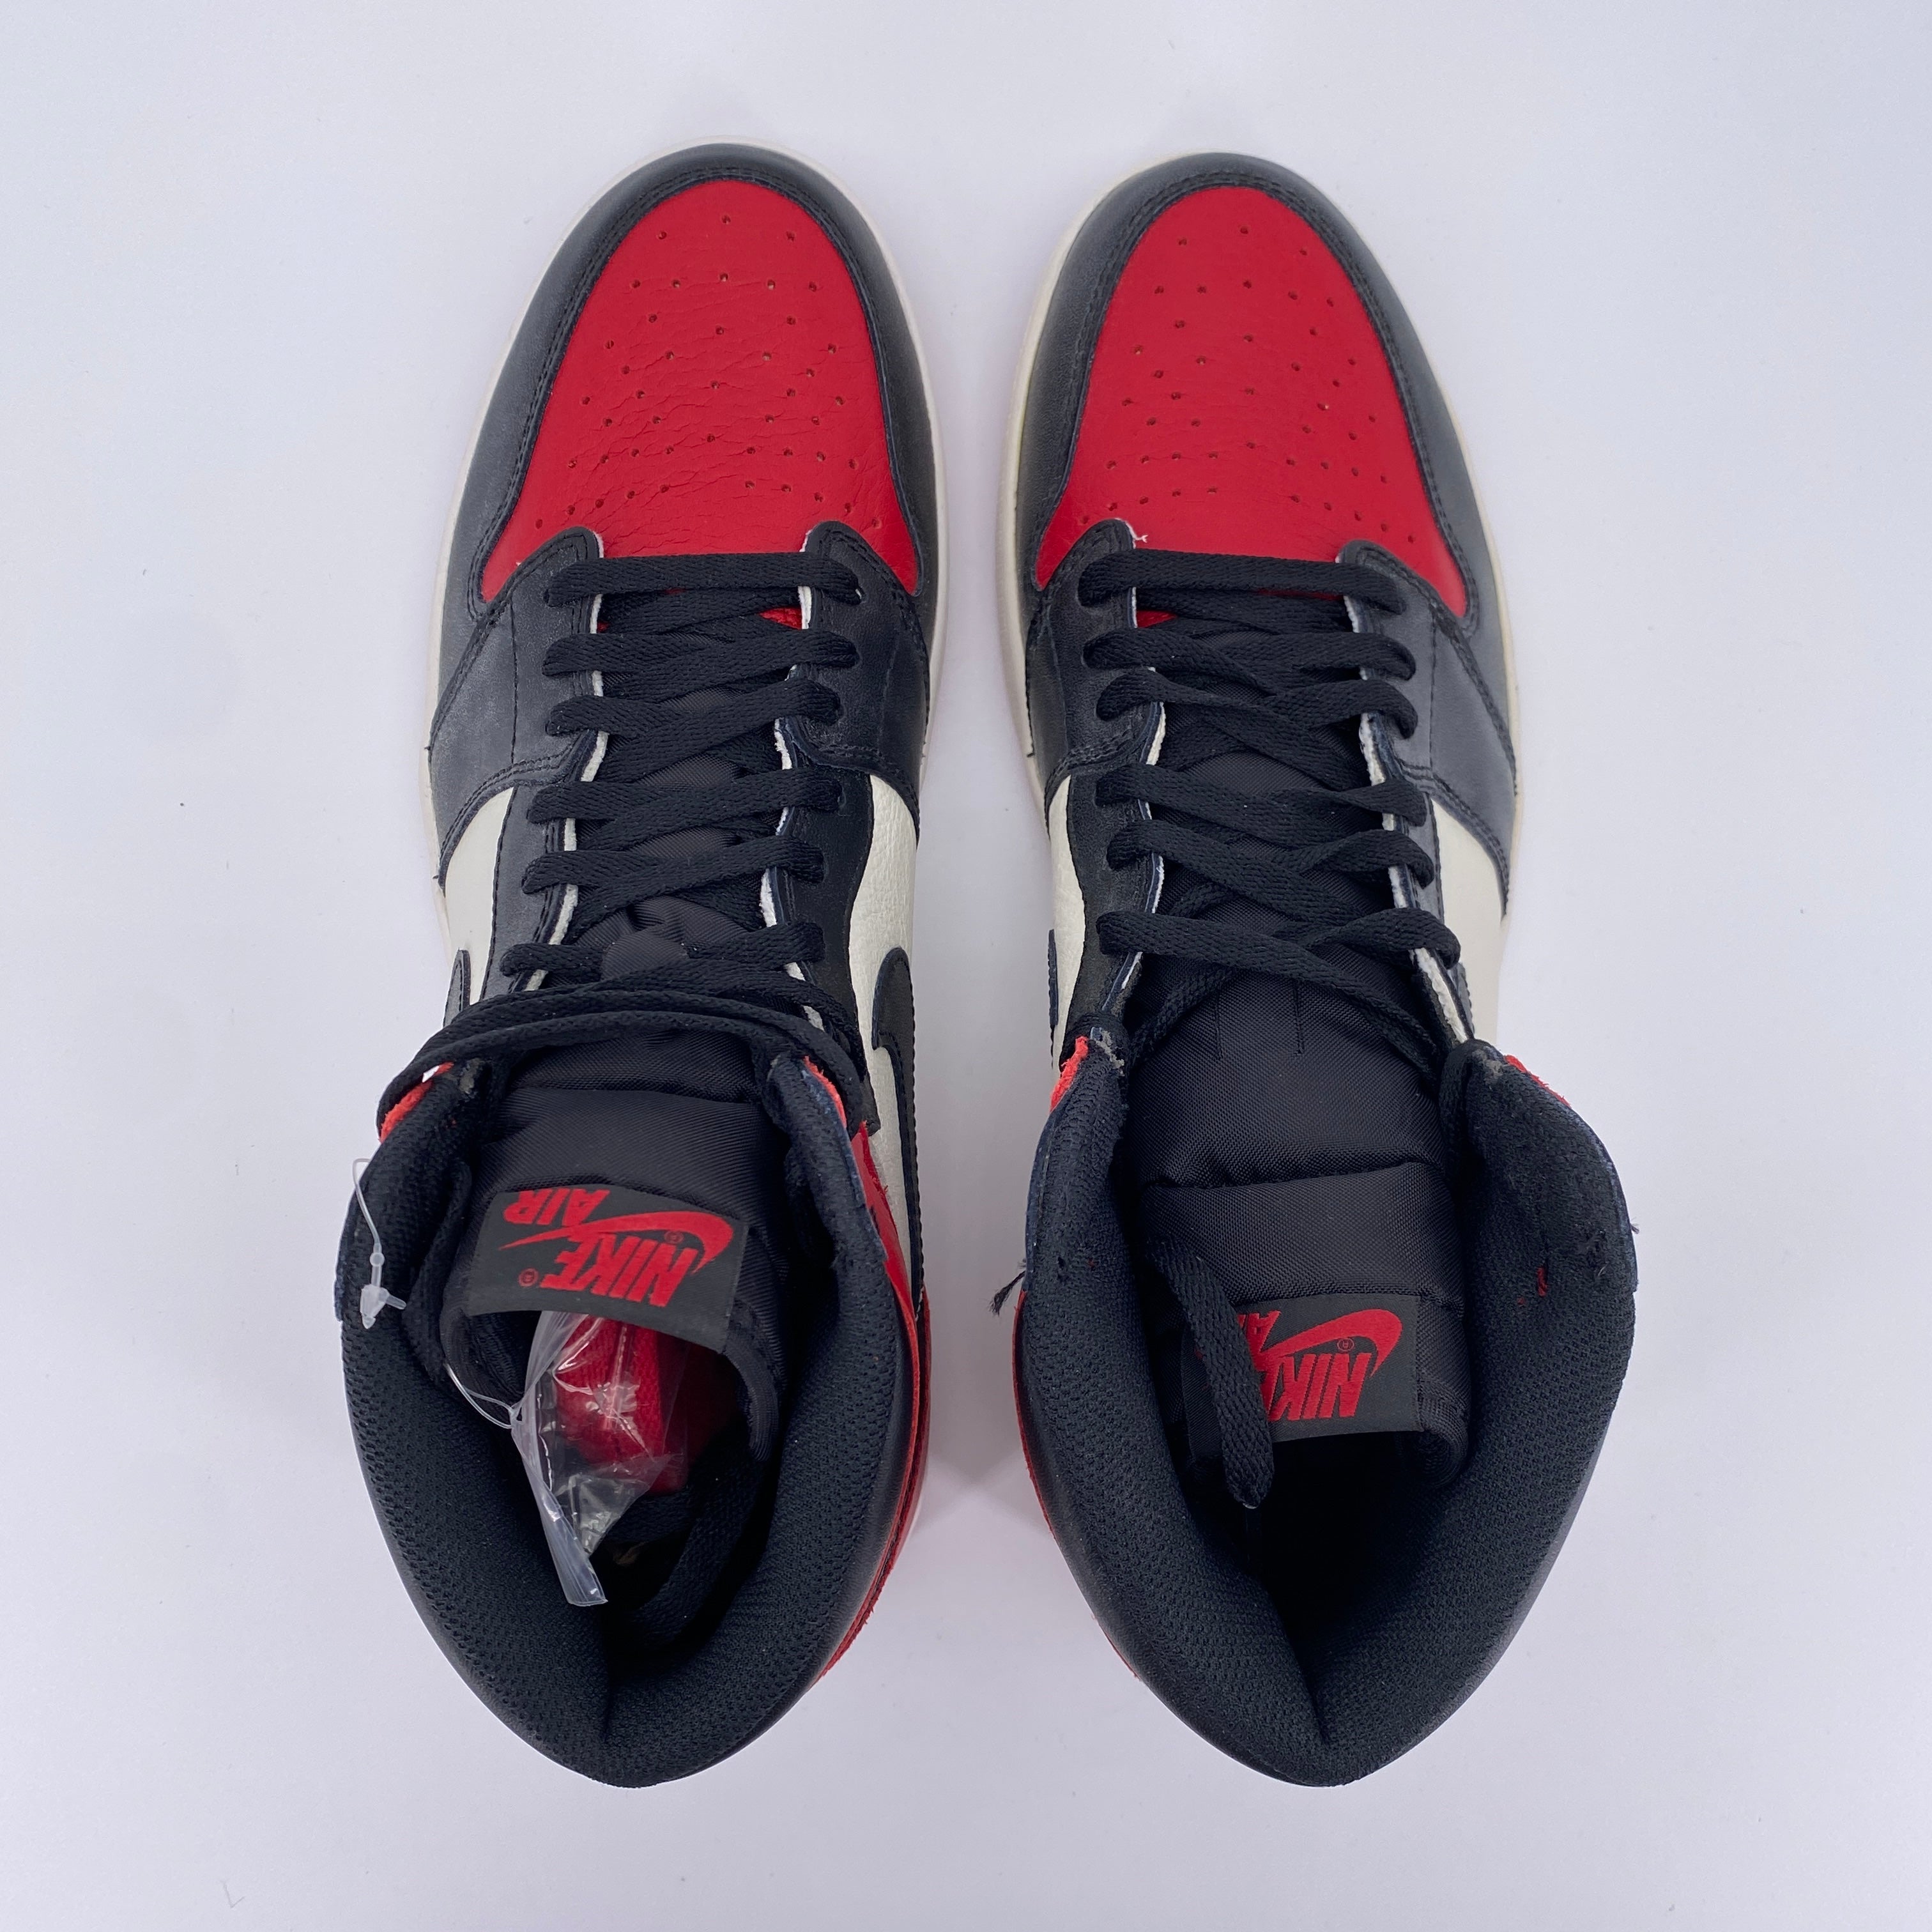 Air Jordan 1 Retro High OG "Bred Toe" 2018 New Size 14